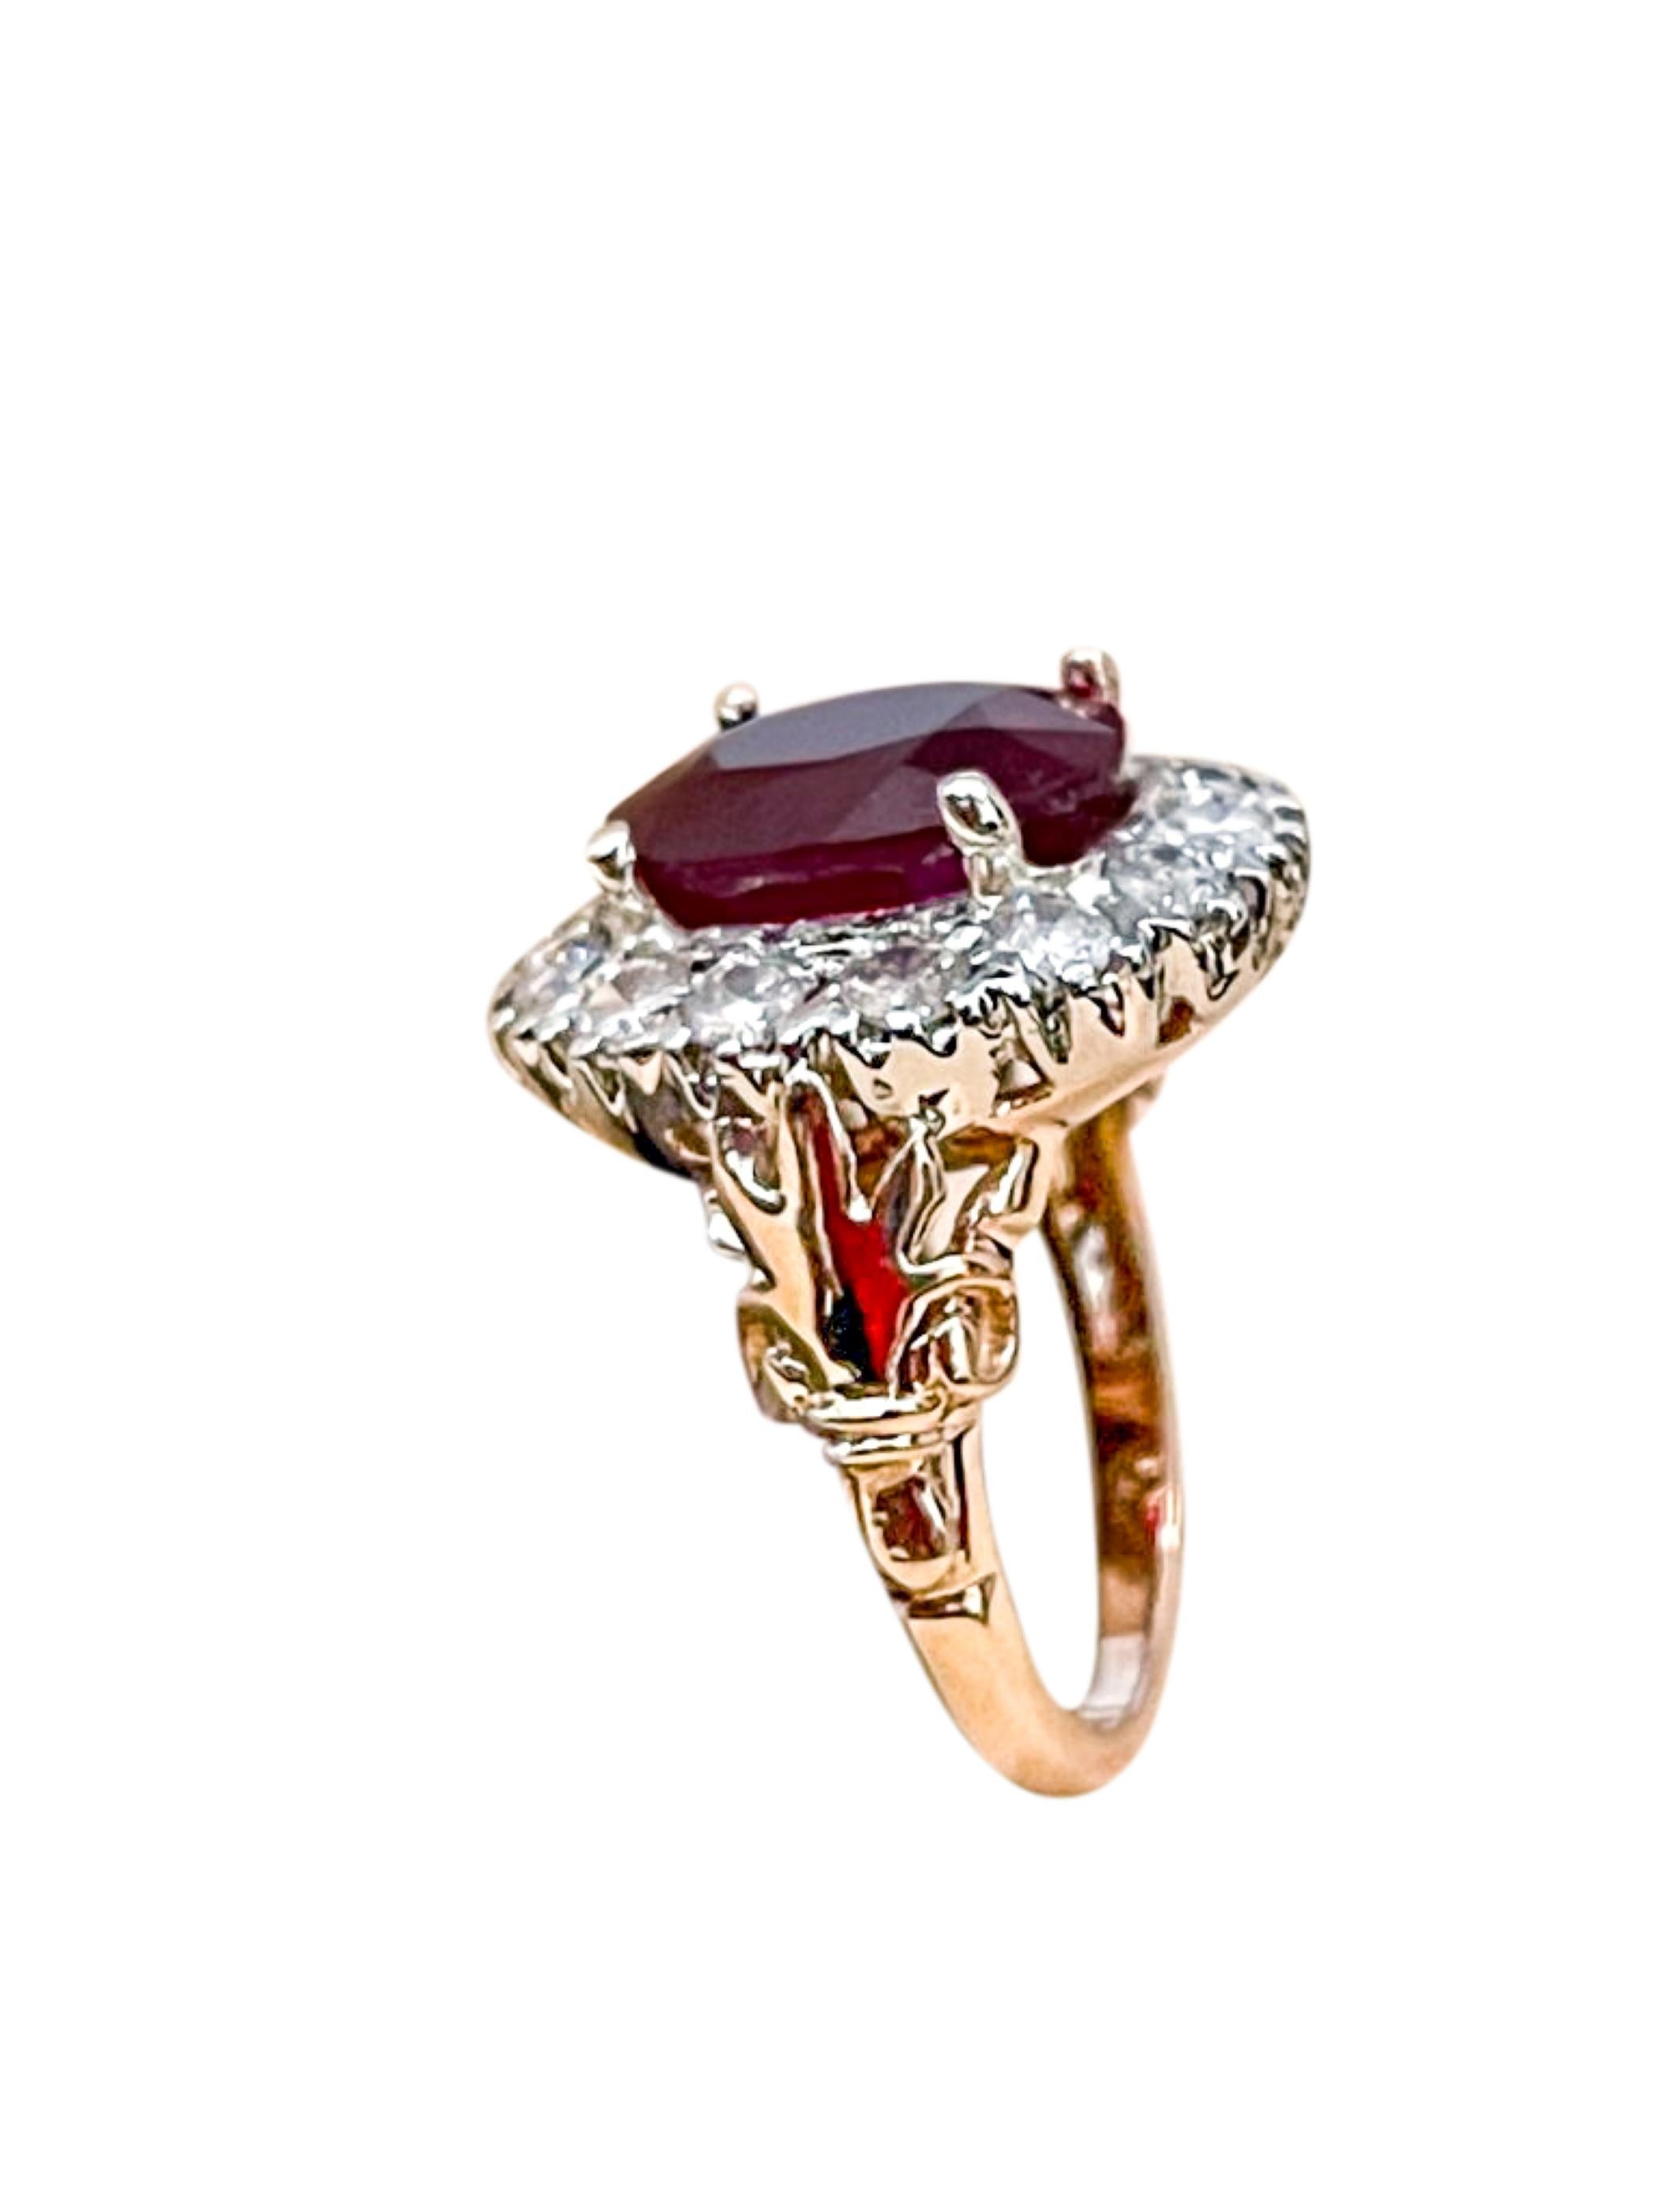 8 carat ruby ring